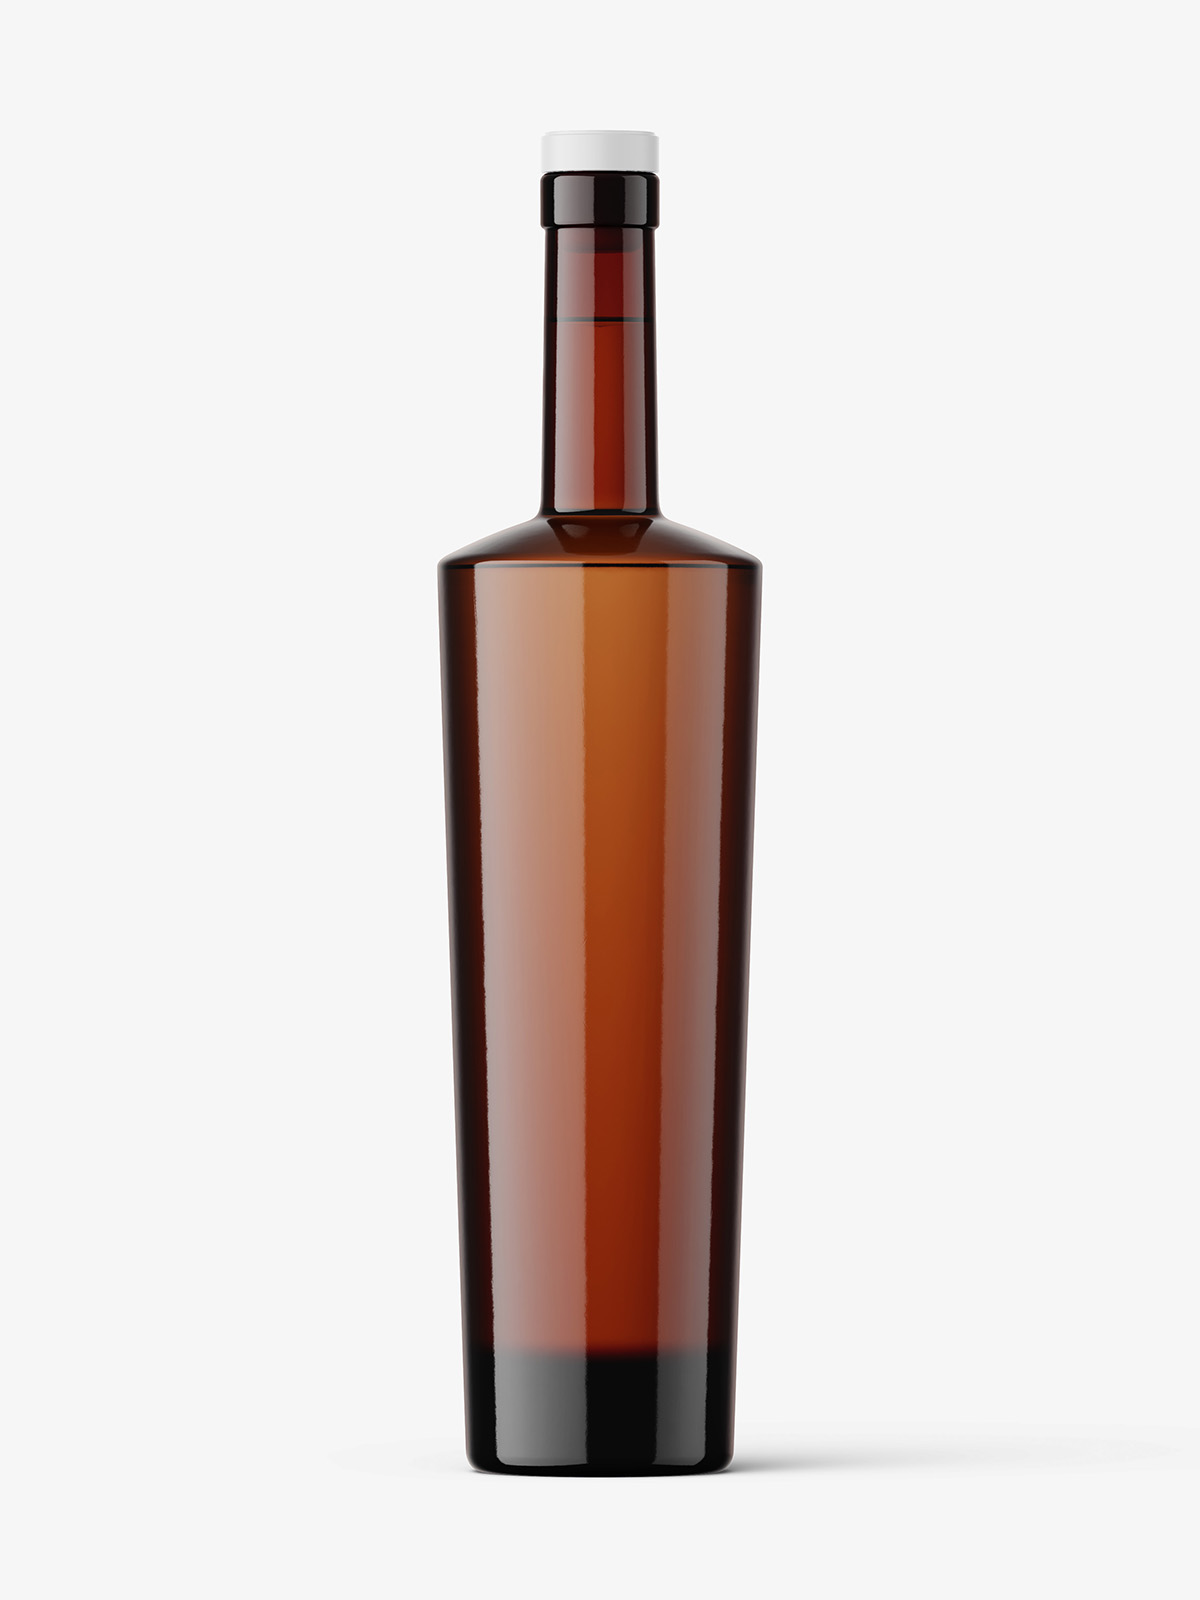 Download Amber vodka bottle mockup - Smarty Mockups